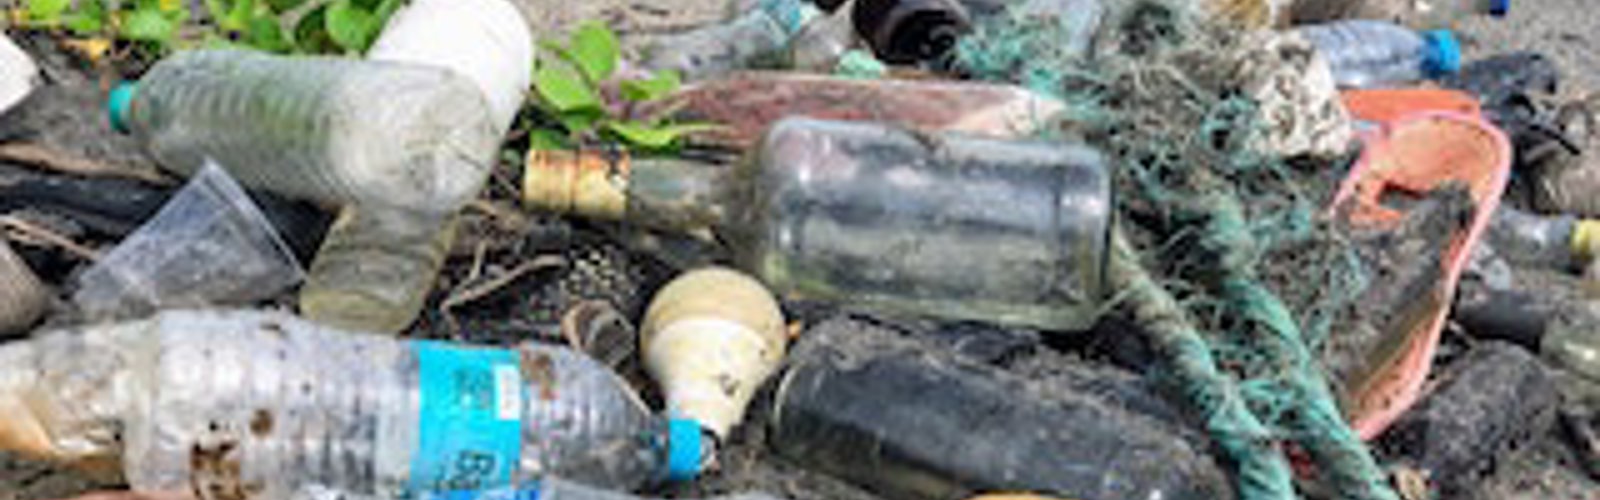 Discarded plastic bottles